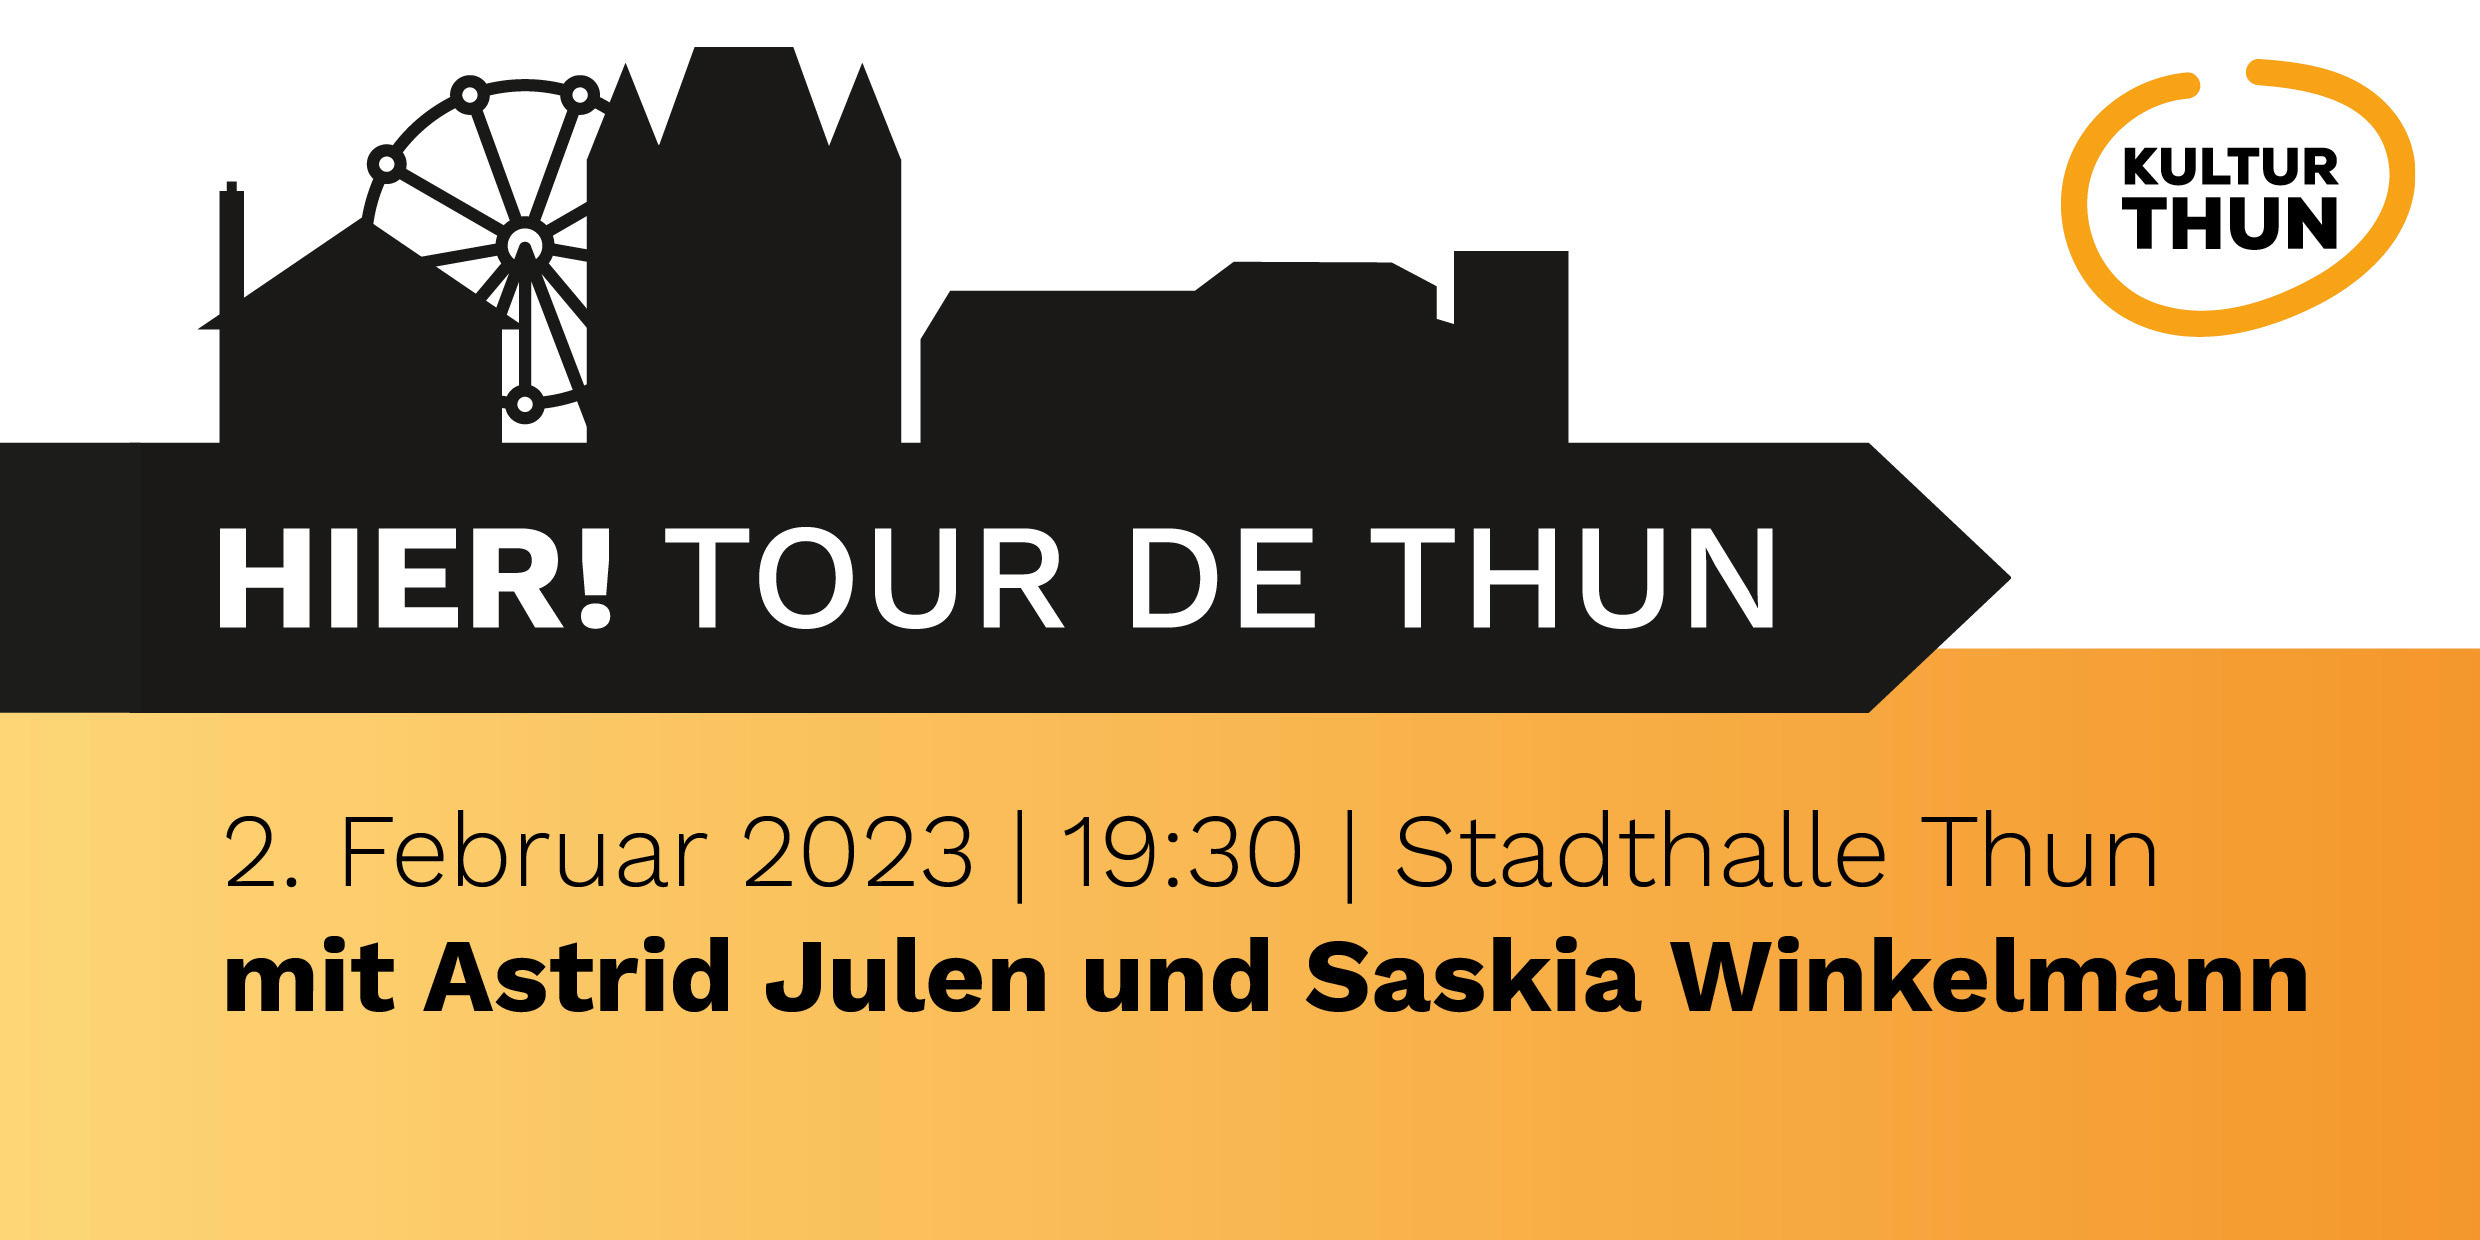 HIER! Tour de Thun - KULTURTHUN | Dachverbund der Thuner Kulturszene